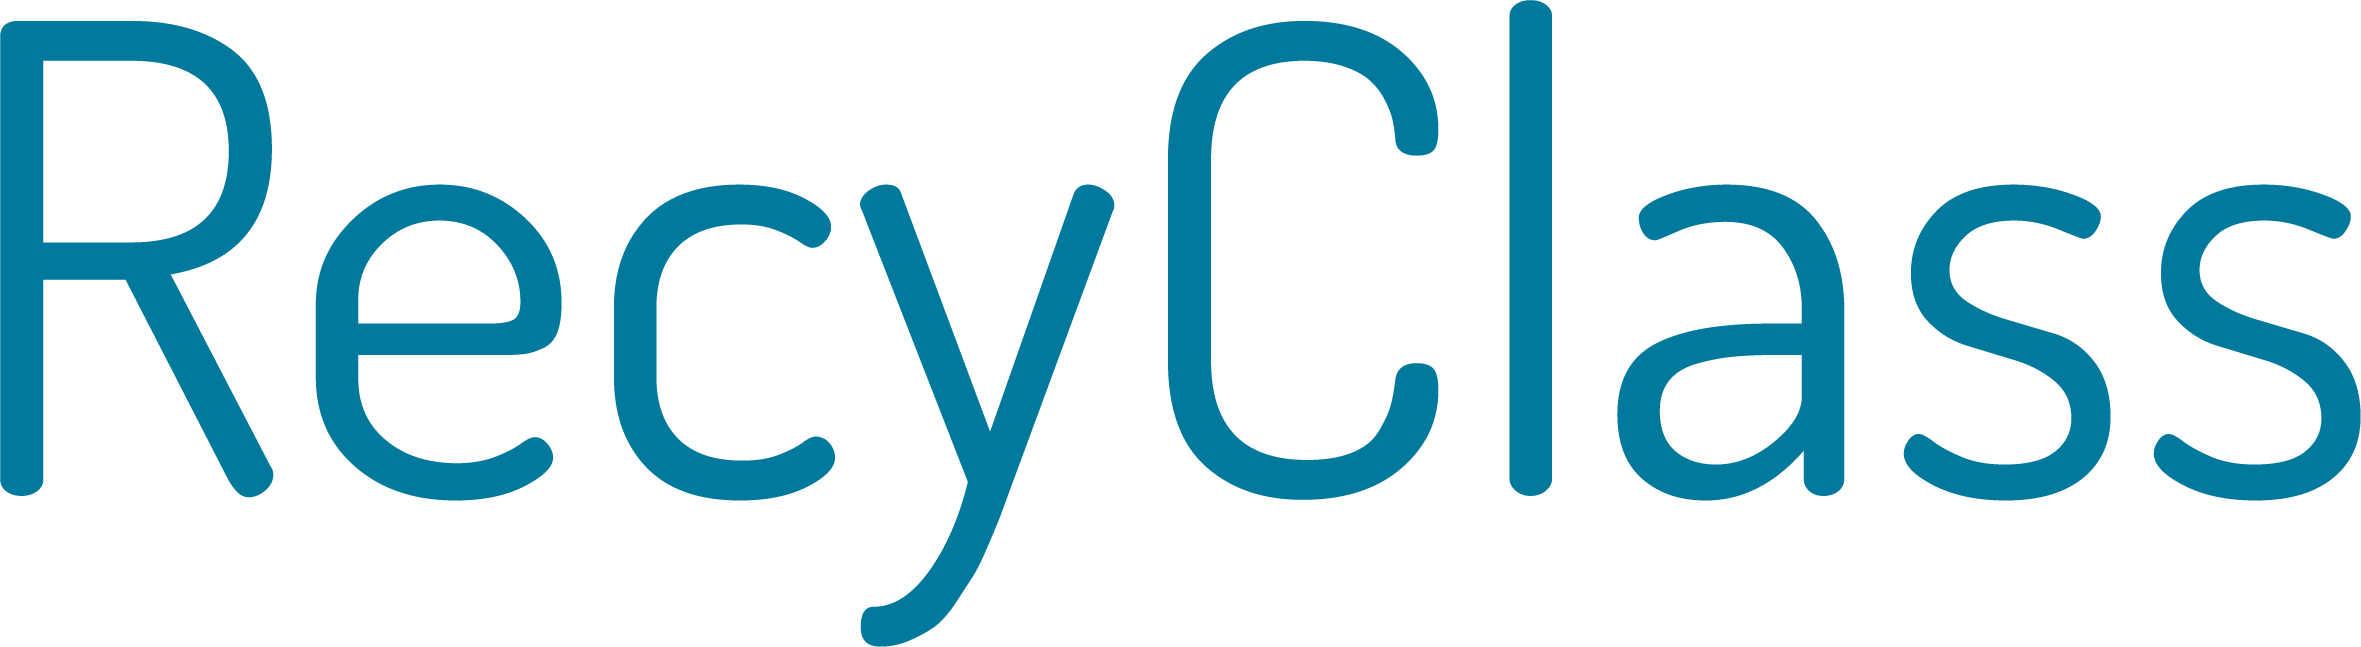 RecyClass-Logo-2020